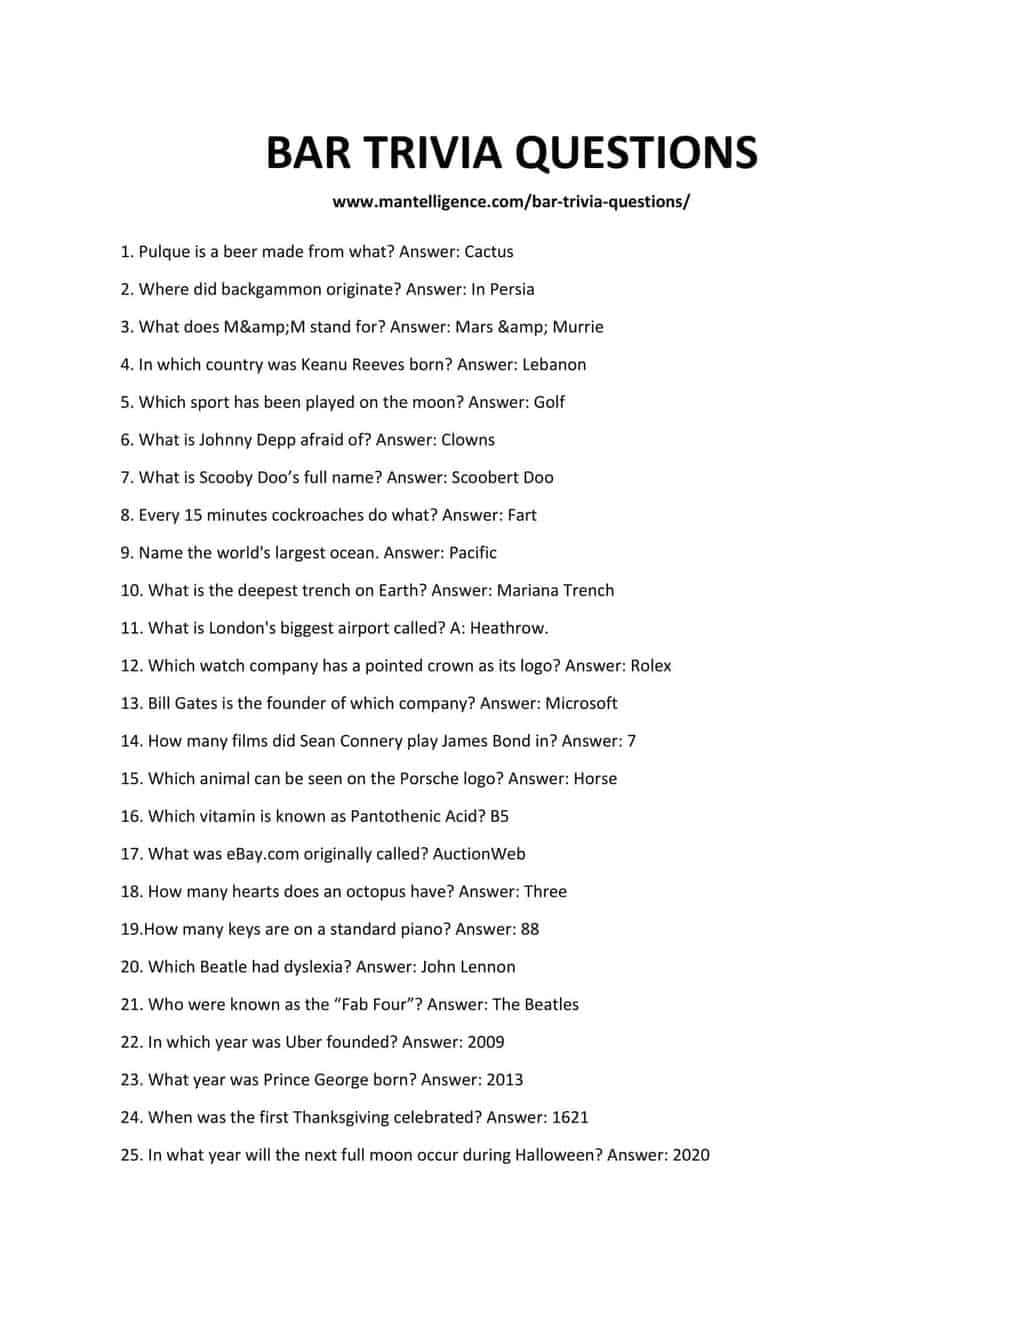 BAR TRIVIA QUESTIONS-1